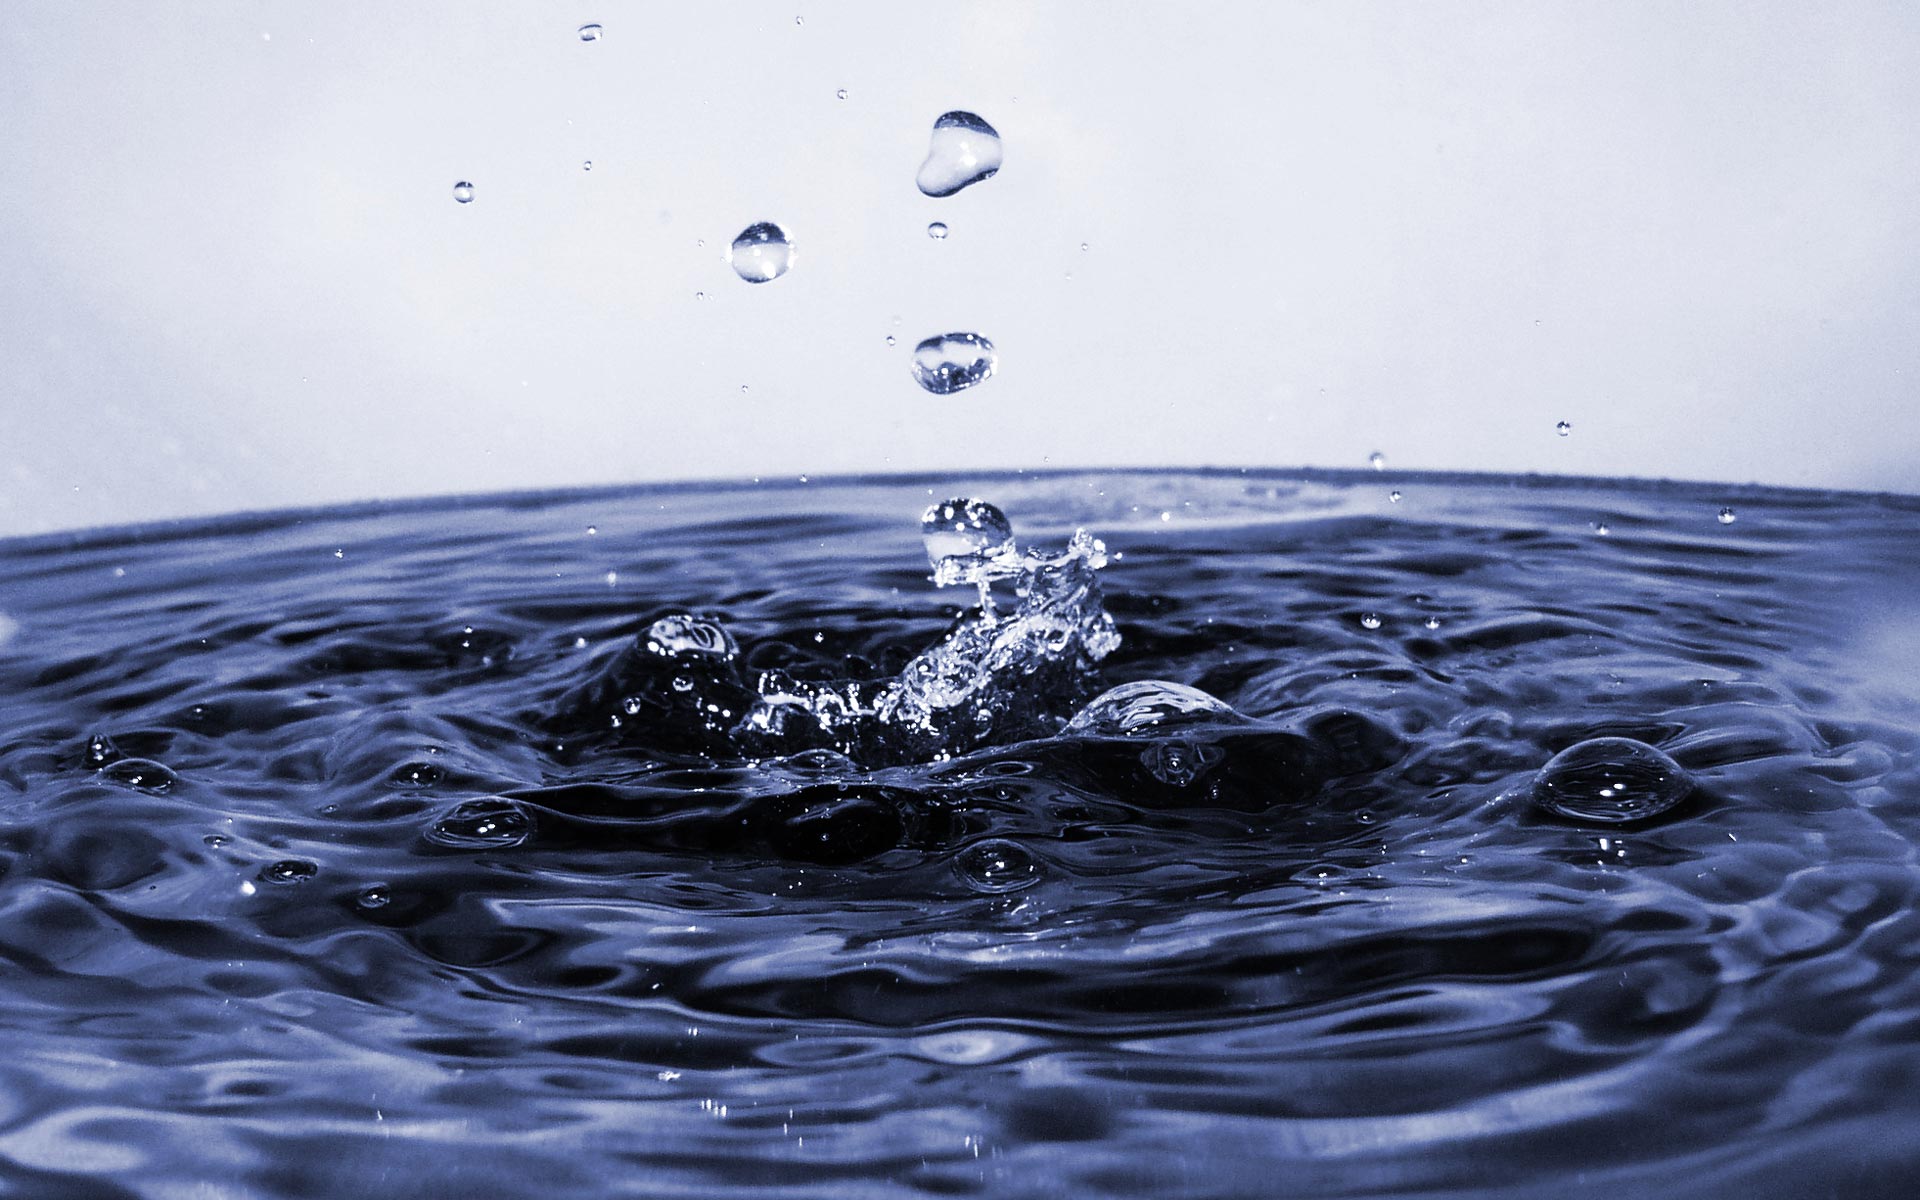 72+] Water Droplets Wallpaper - WallpaperSafari